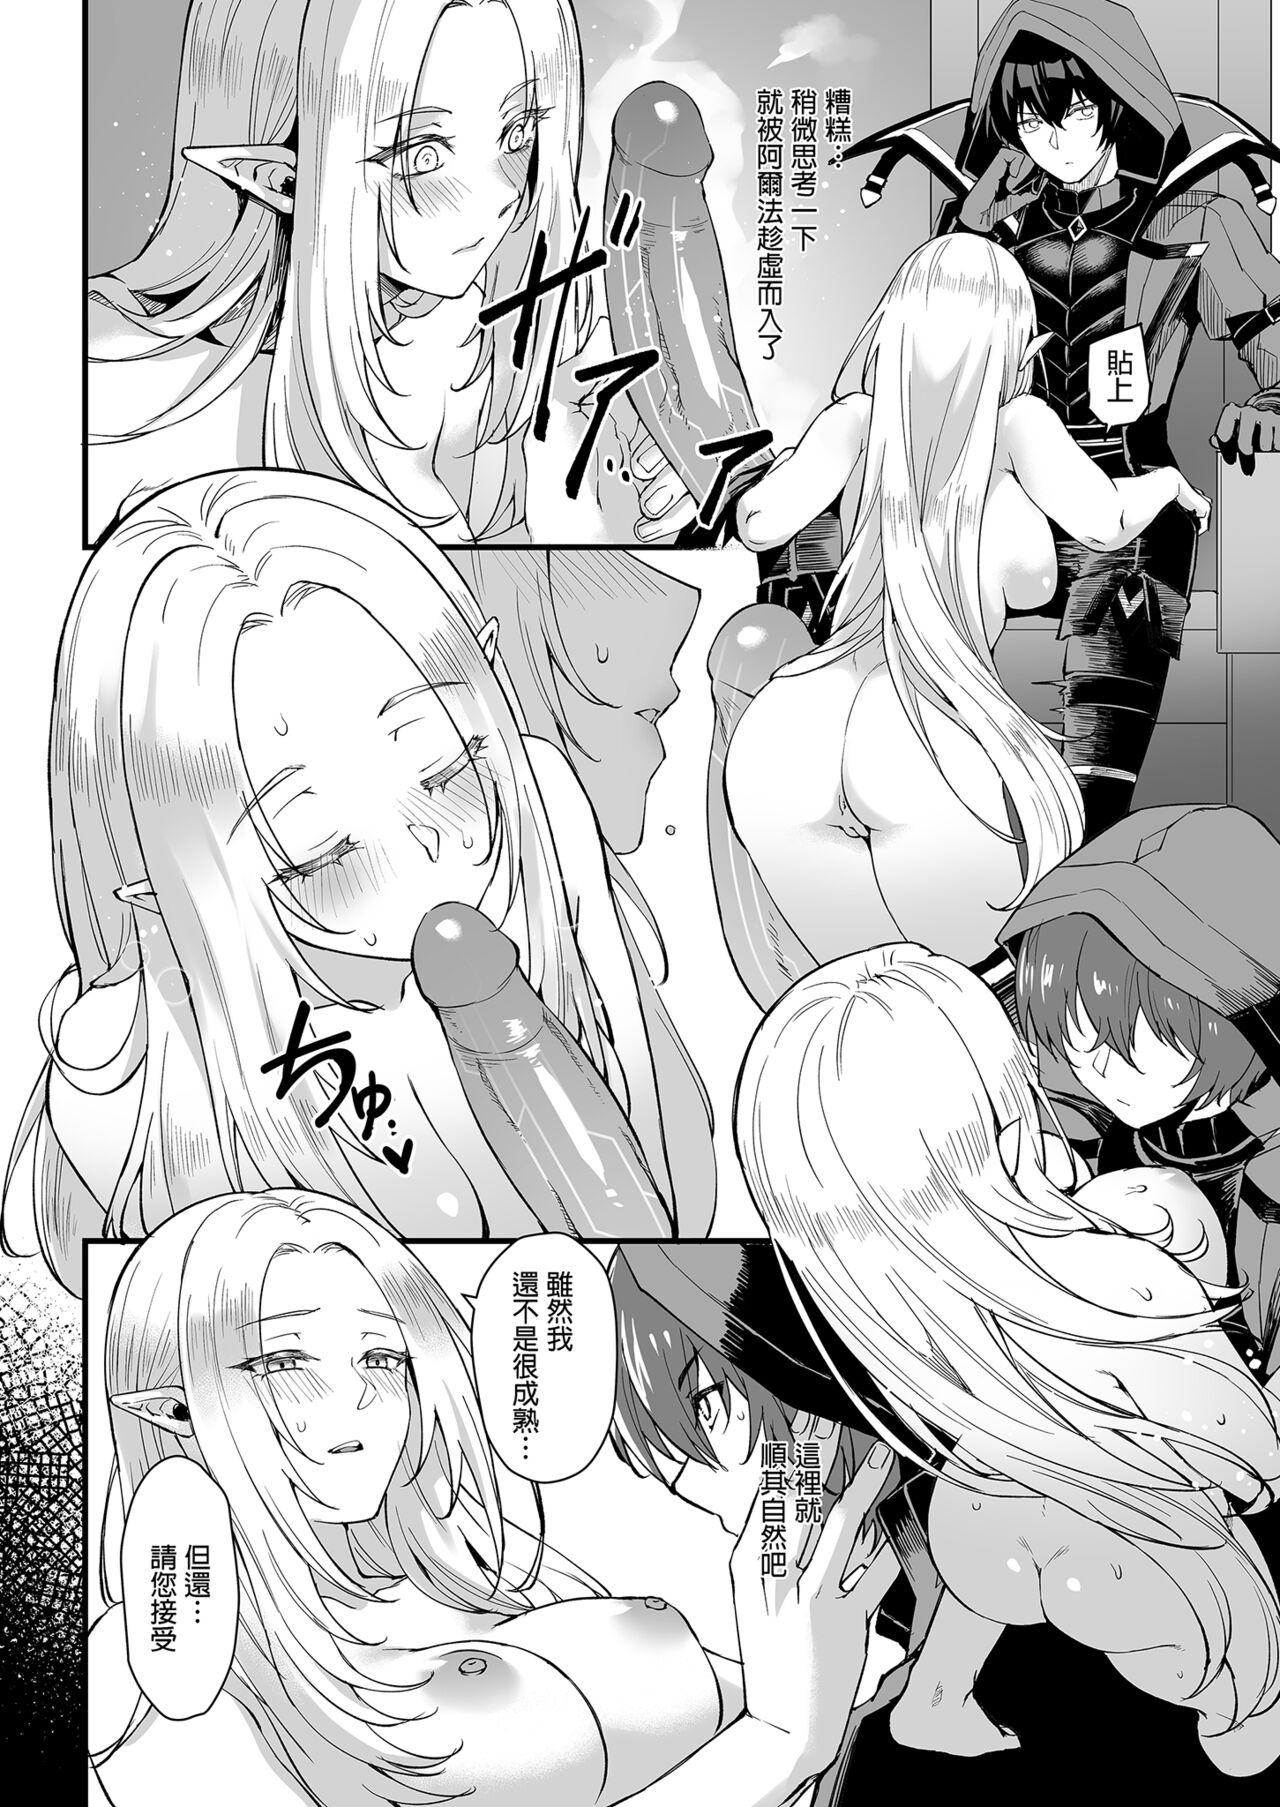 Moaning I NEED MORE POWER! - Kage no jitsuryokusha ni naritakute | the eminence in shadow Small Tits - Page 8